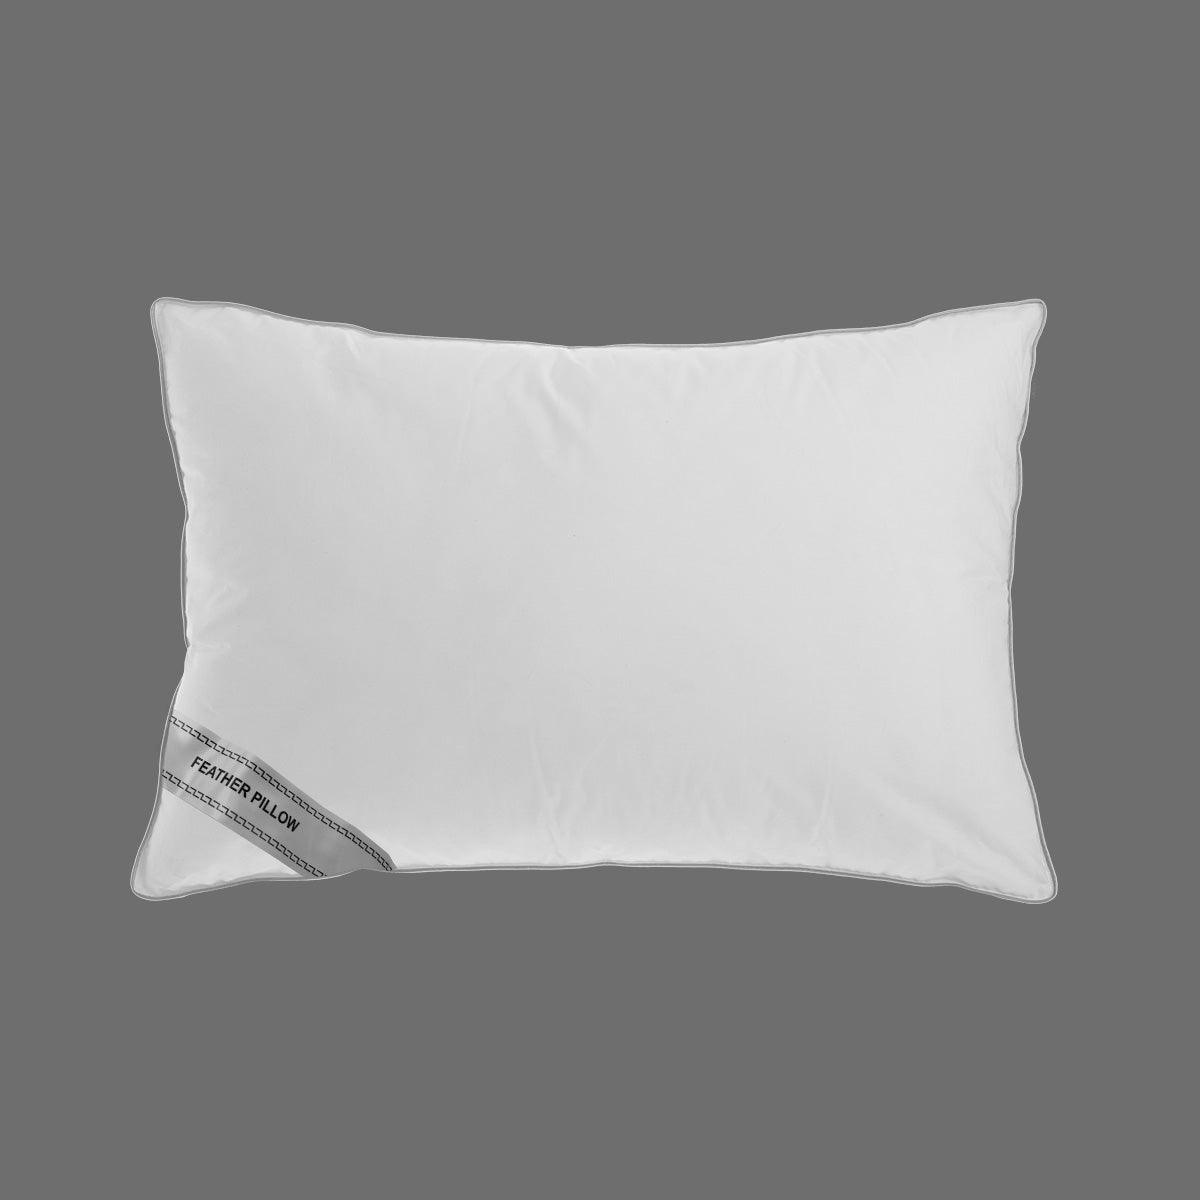 Luxurious soft feather pillow 900 gram